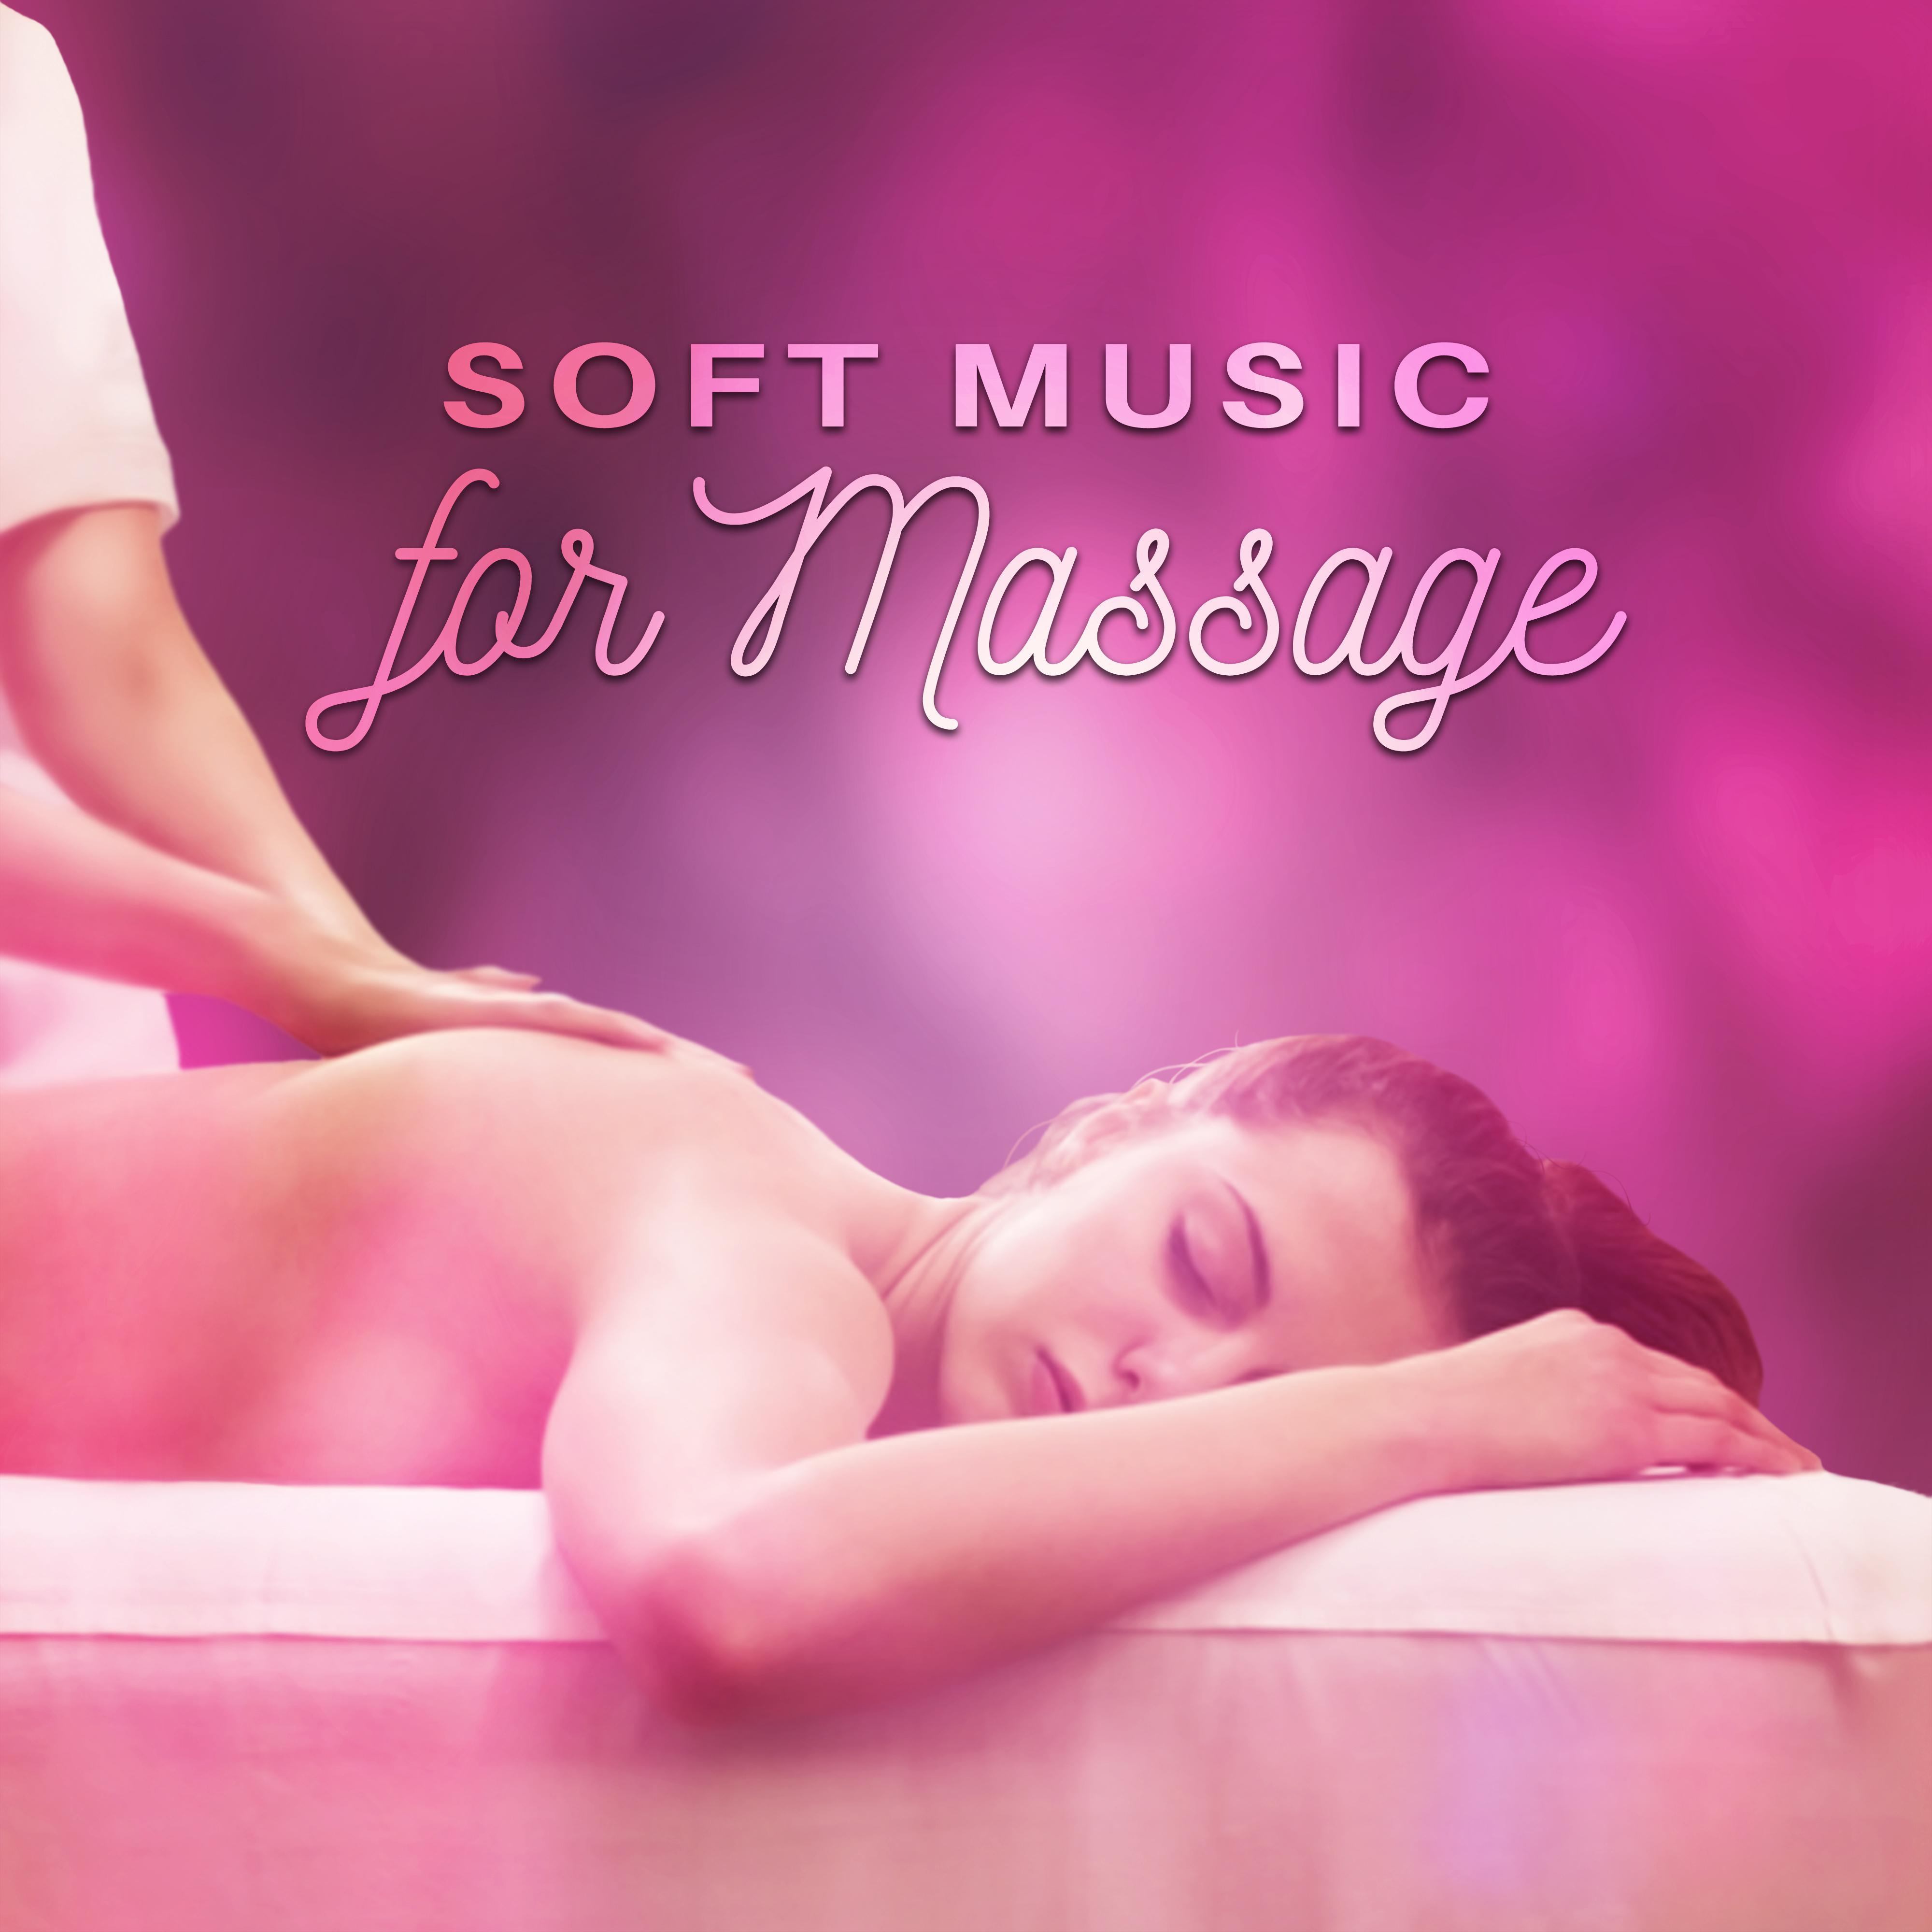 Soft Music for Massage – Relaxation Wellness, Bliss Spa, Zen, Pure Massage, Deep Sleep, Meditation, Nature Sounds